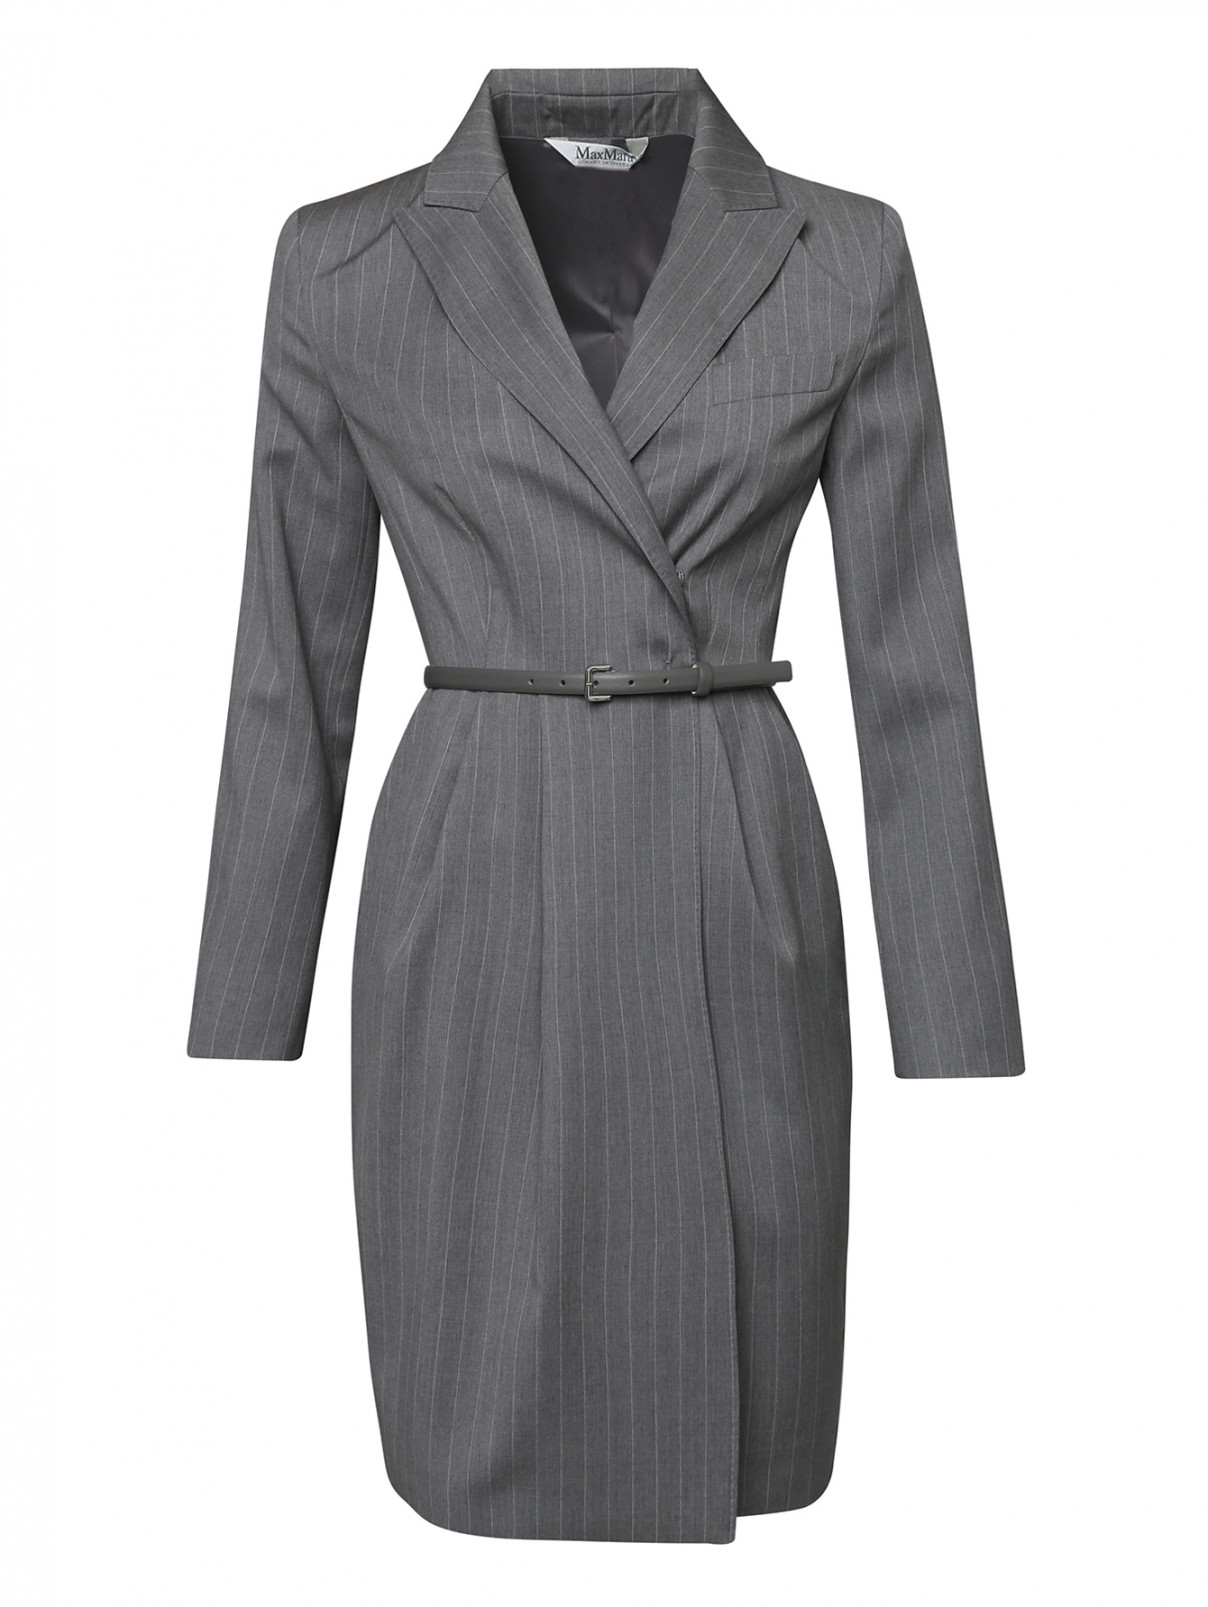 Платье из шерсти с узором полоска Max Mara  –  Общий вид  – Цвет:  Серый